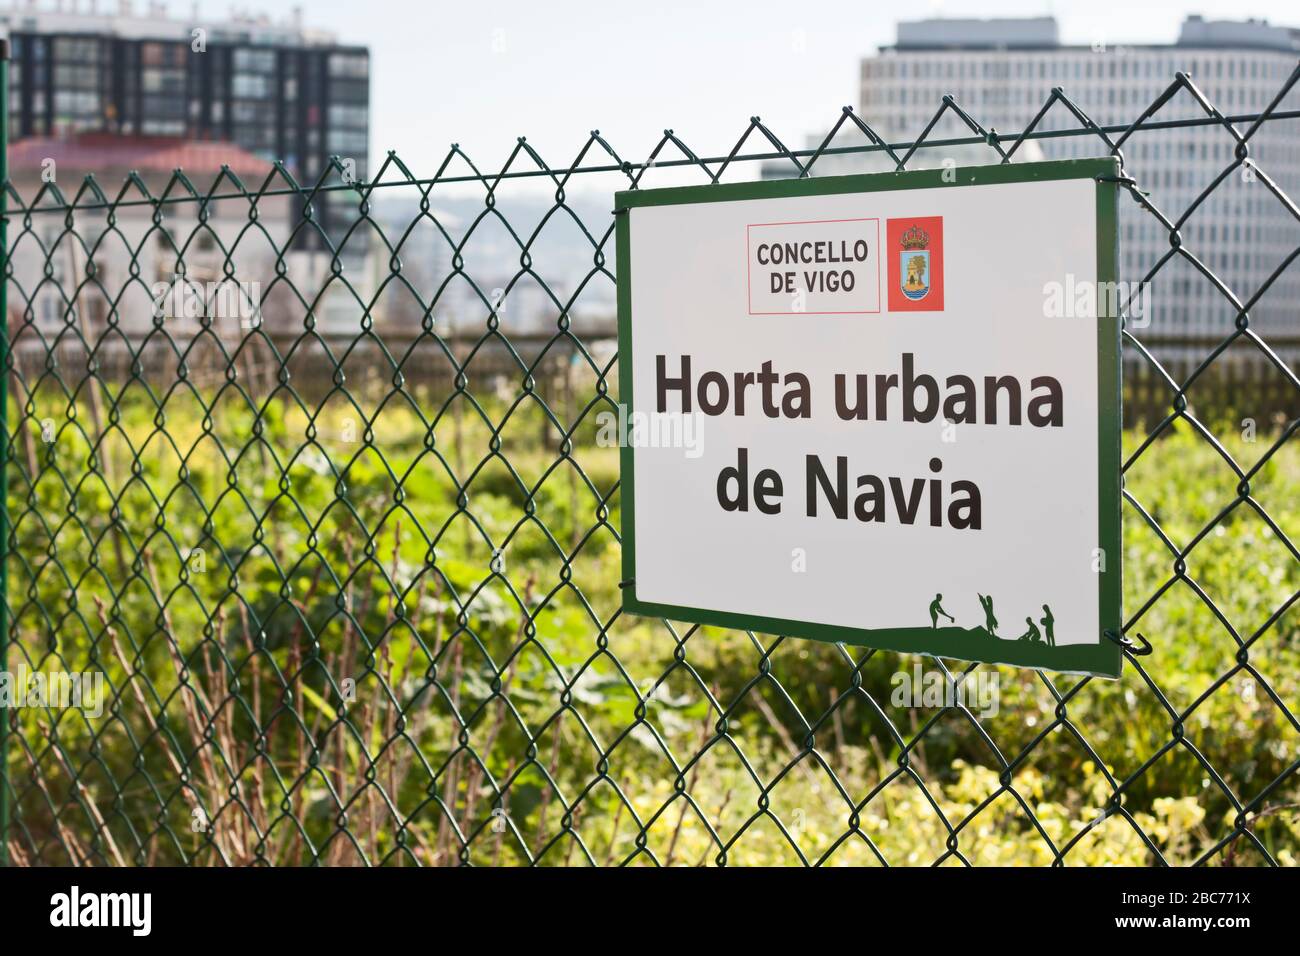 Le verger urbain du quartier de Navia signe le 19 février 2020 dans la ville de Vigo, Pontevedra, Espagne. Banque D'Images